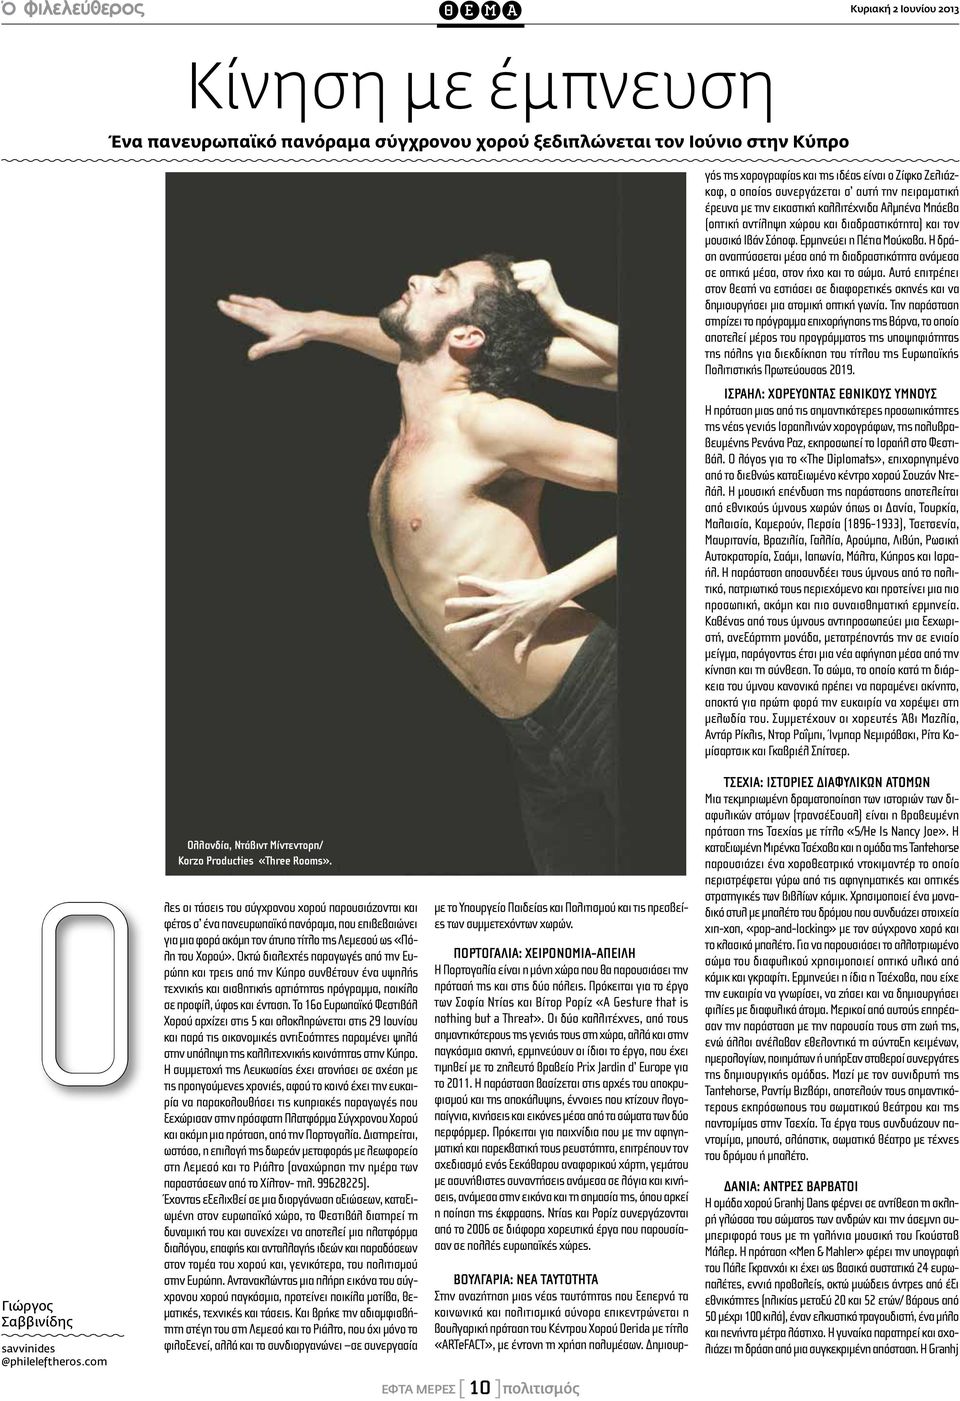 Δημιουργός της χορογραφίας και της ιδέας είναι ο Ζίφκο Ζελιάζκοφ, ο οποίος συνεργάζεται σ αυτή την πειραματική έρευνα με την εικαστική καλλιτέχνιδα Αλμπένα Μπάεβα (οπτική αντίληψη χώρου και